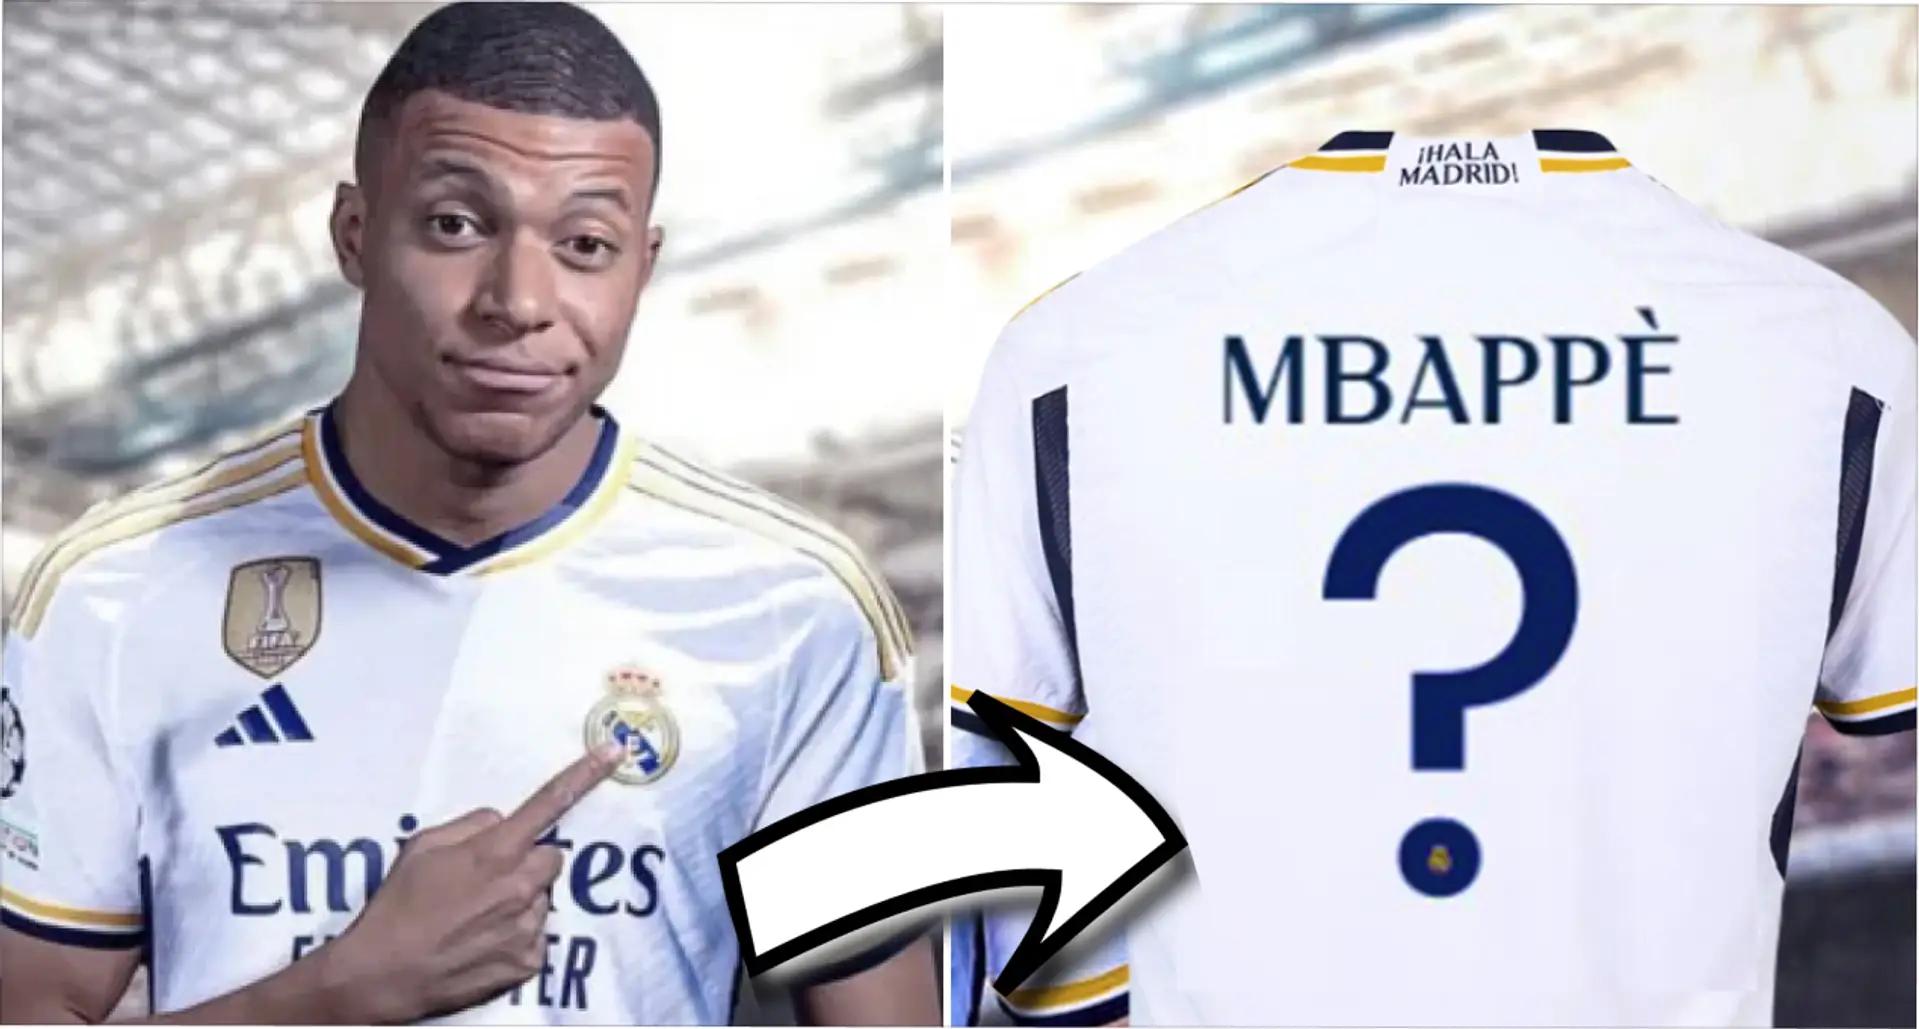 "Commandez un maillot et imprimez son nom": un journaliste de la FIFA fait le point sur le transfert de Mbappé à Madrid